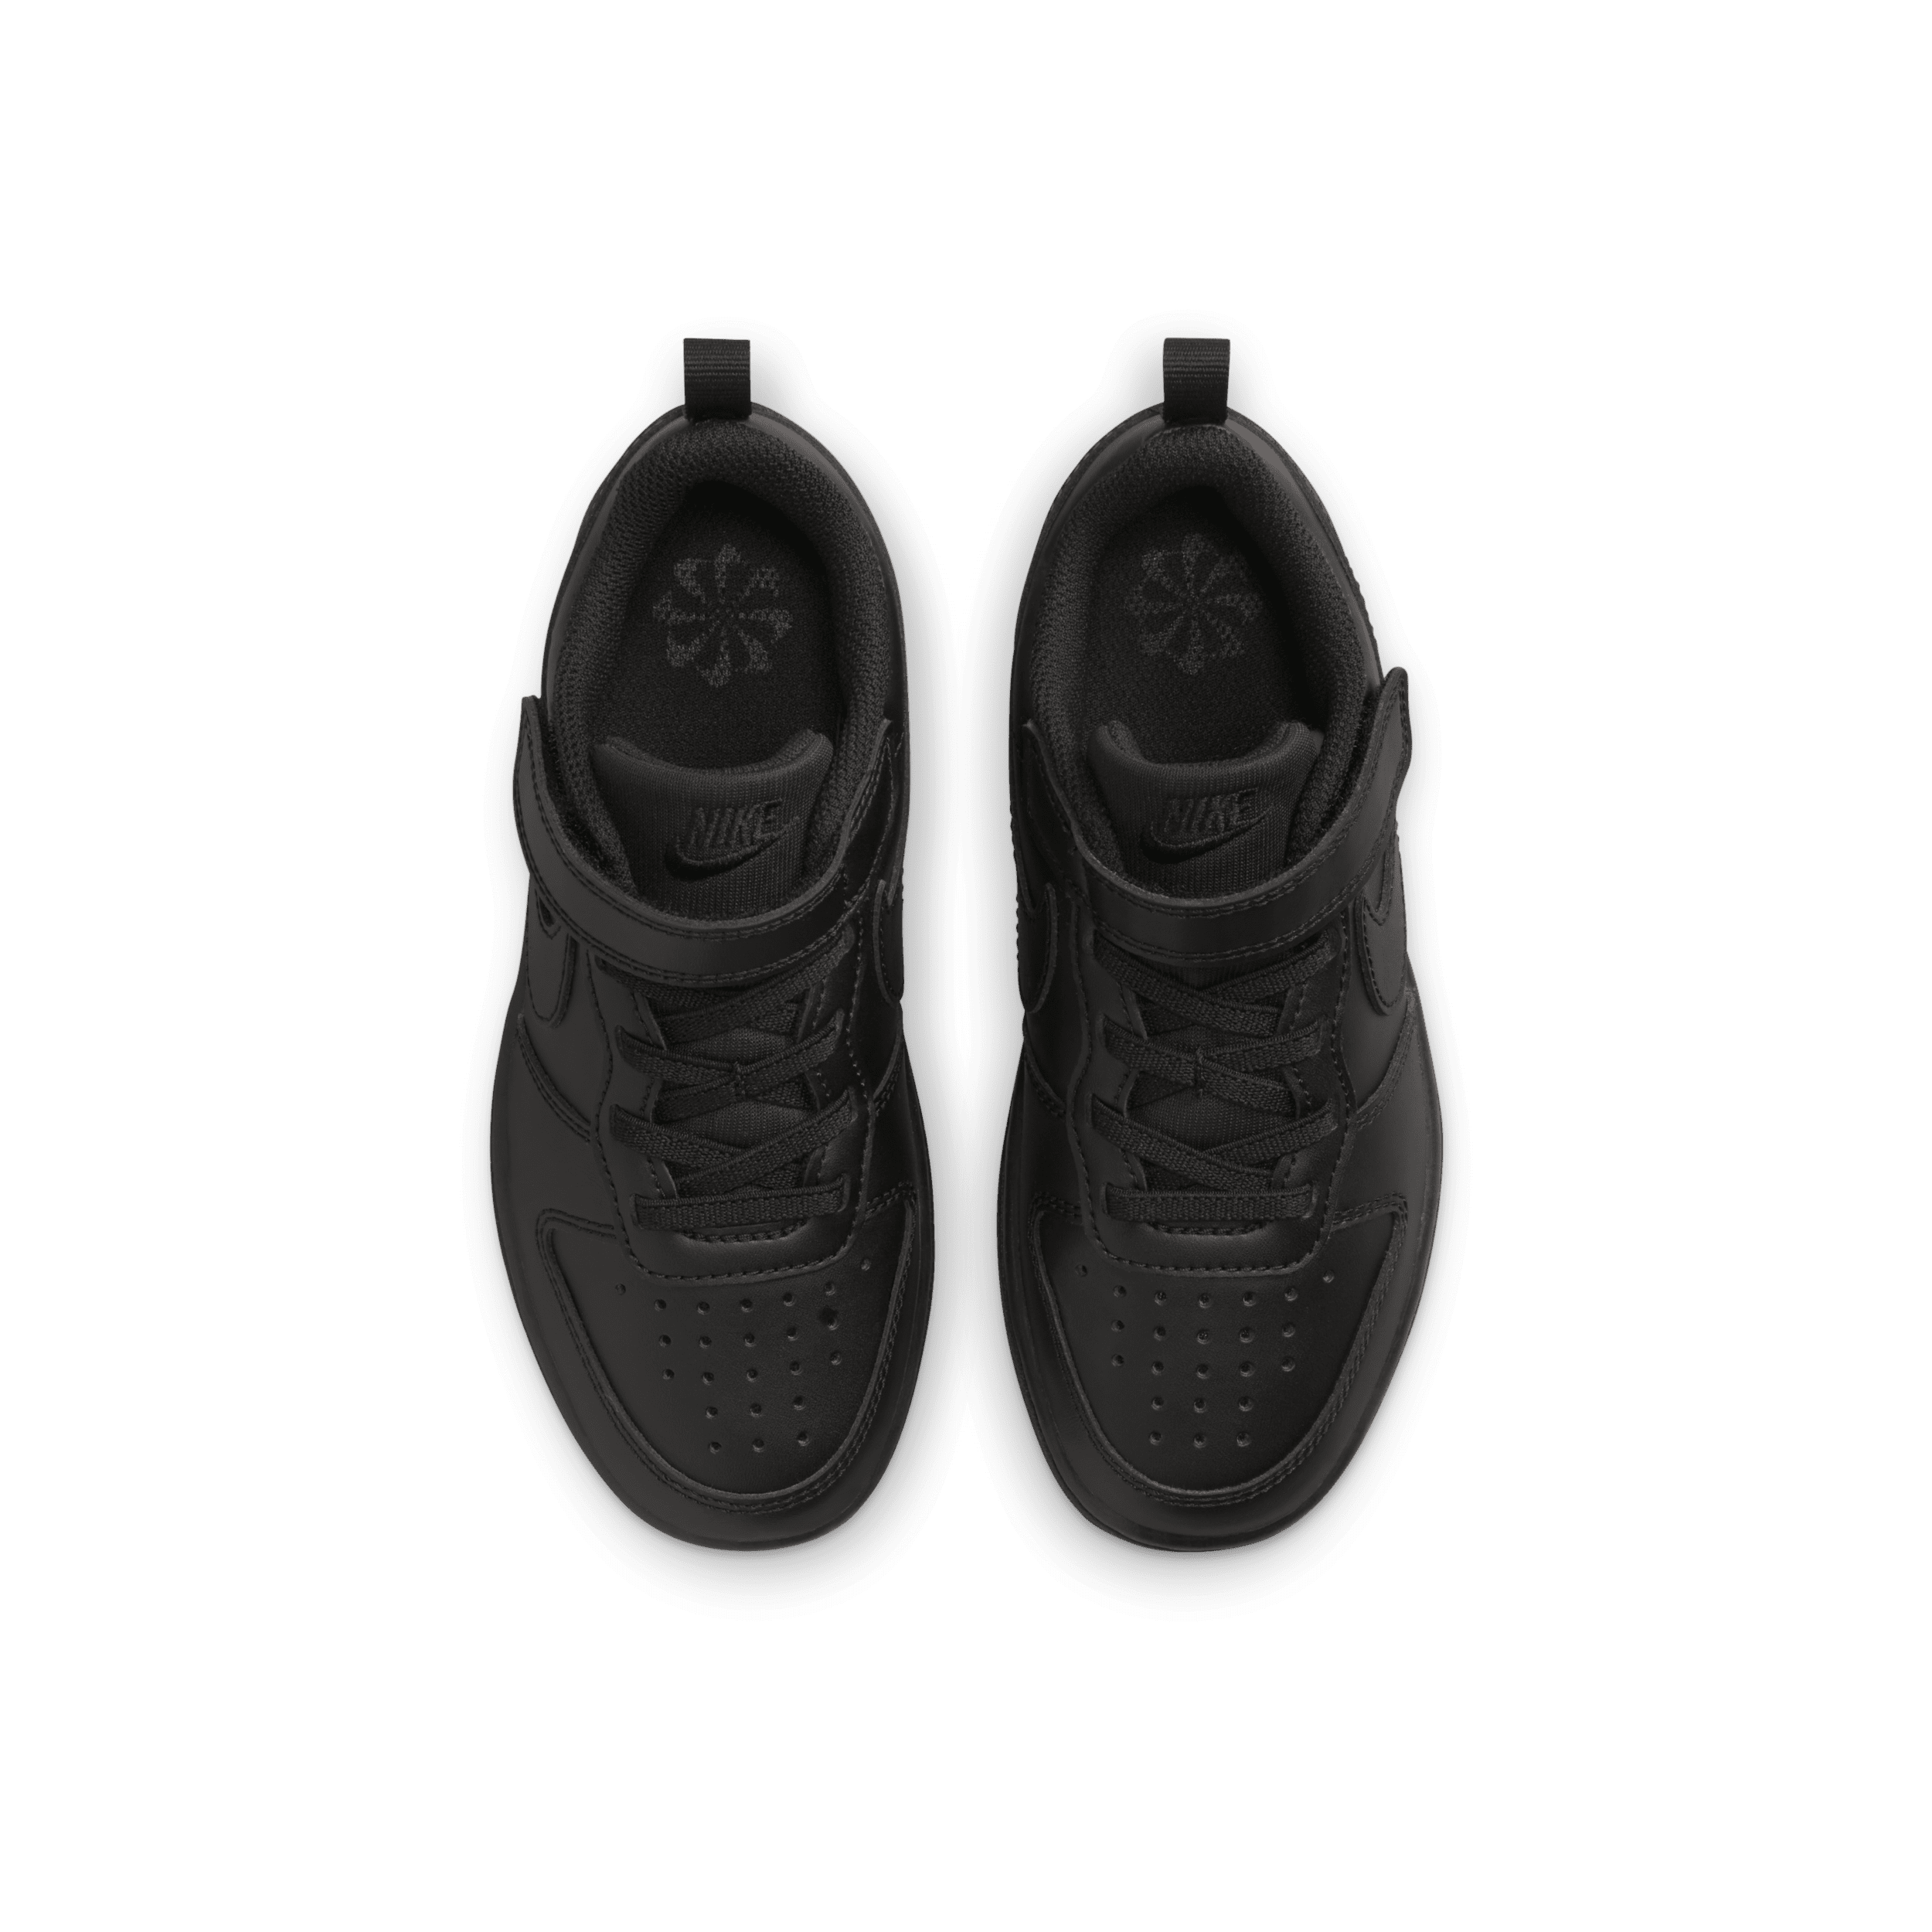 Bild von Court Borough Low Recraft (PS) Sneaker, Black/Black-Black, 35